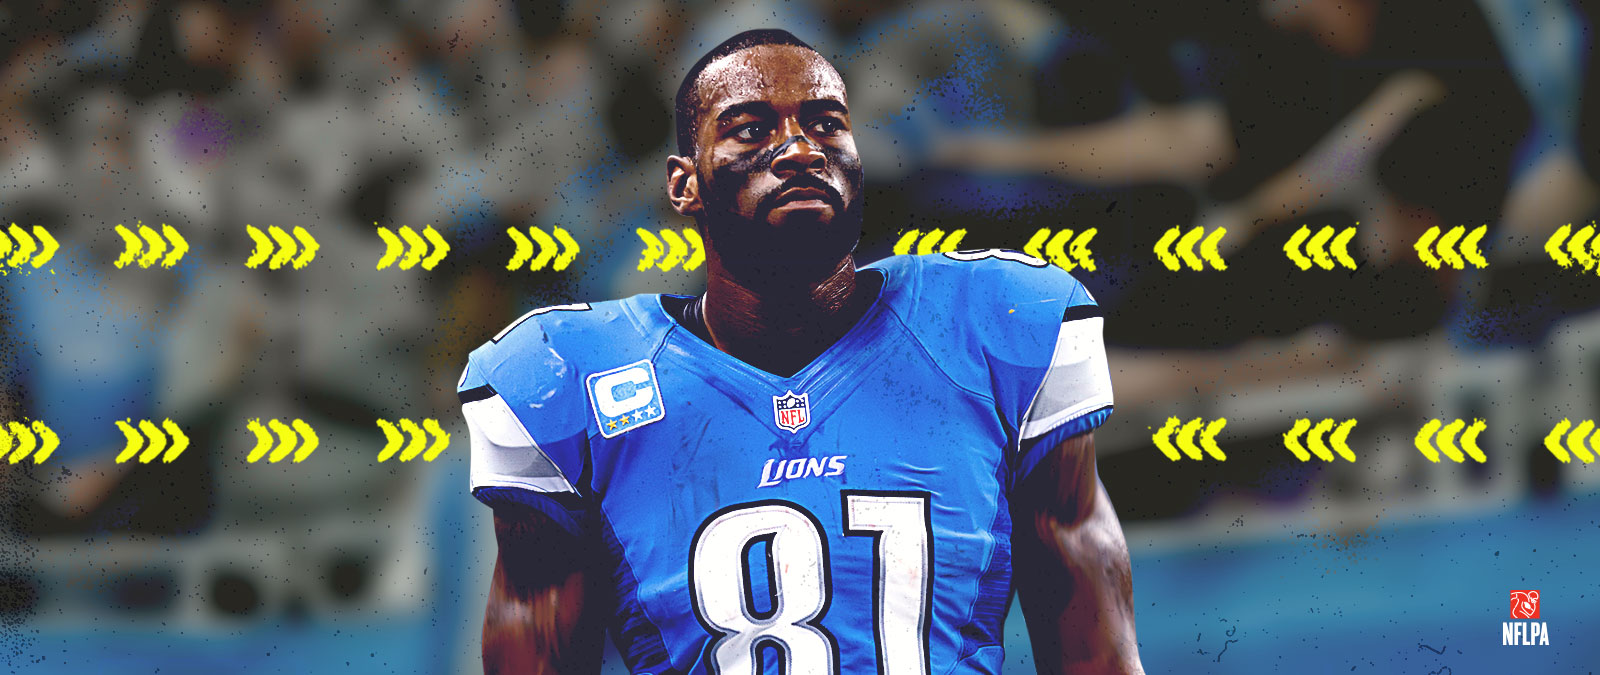 Λογότυπο NFLPA, ο Calvin Johnson φοράει μπλε φανέλα των Lions με τον αριθμό 81 στο στήθος.